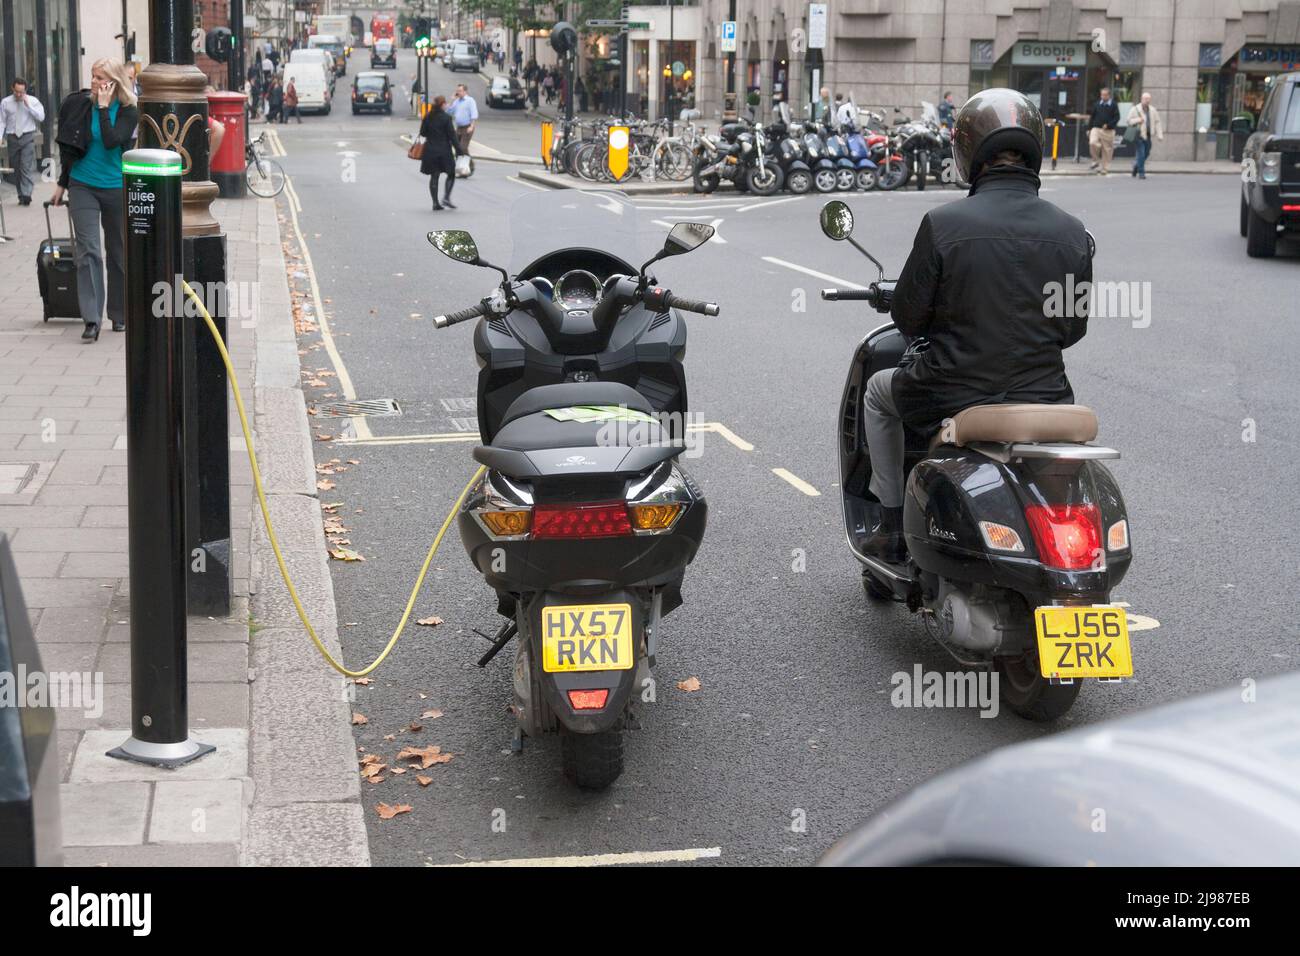 Autofahrer, der darauf wartet, seinen Roller aufzuladen, London, Großbritannien Stockfoto